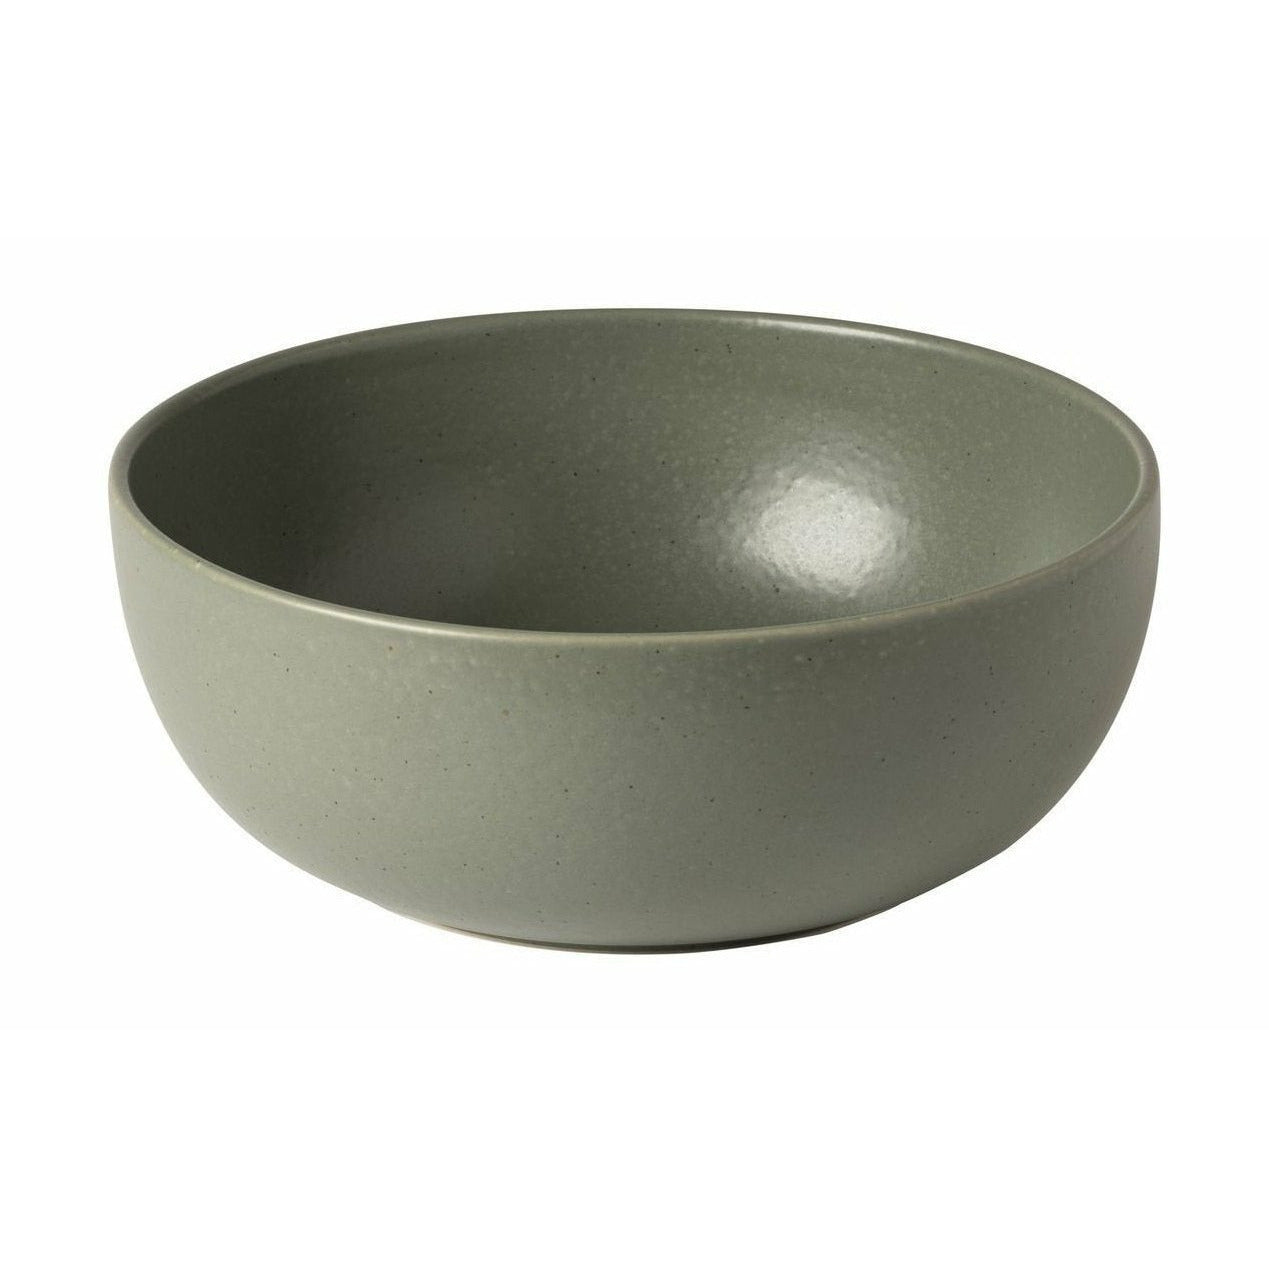 Bowl di insalata di Casafina, verde